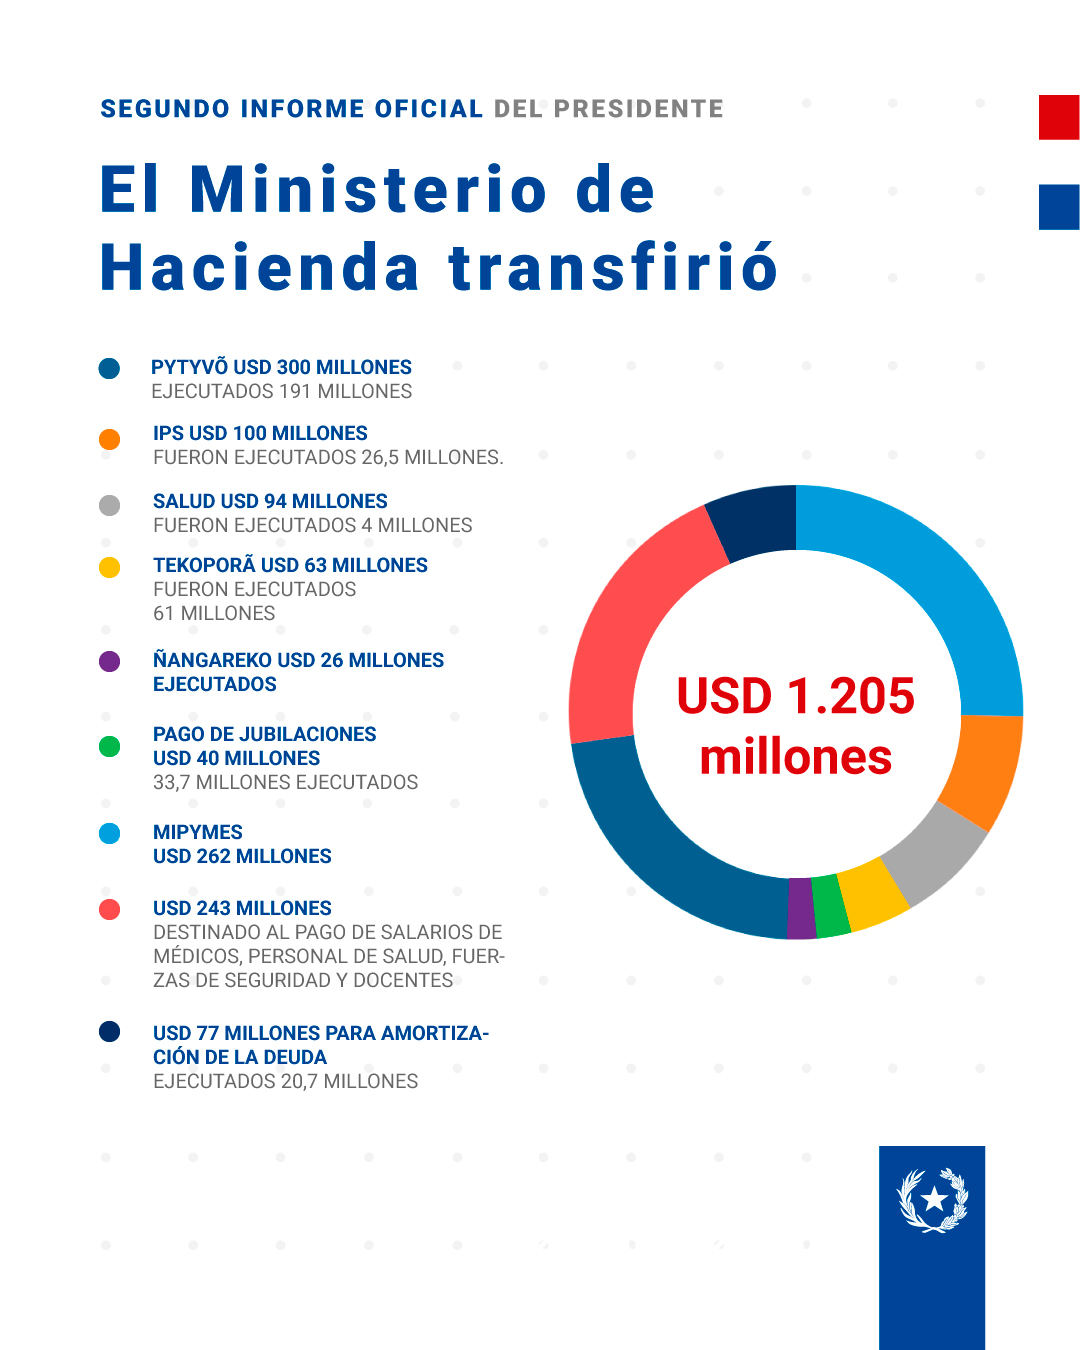 Transferencia del Ministerio de Hacienda de los fondos de la Ley de Emergencia. Fuente: Presidencia